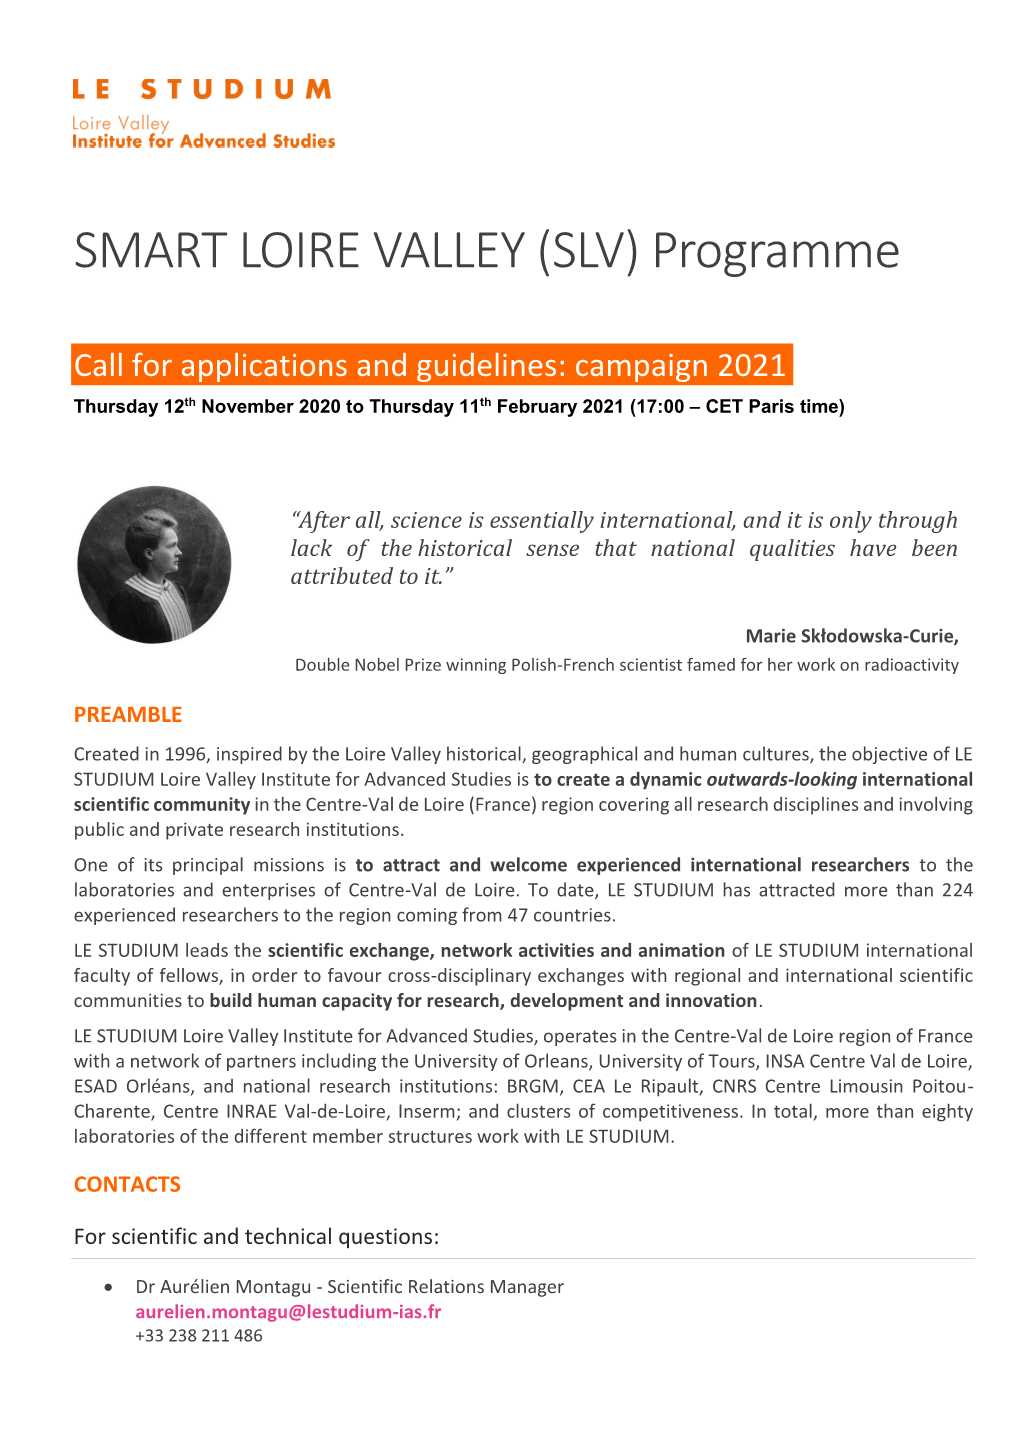 SMART LOIRE VALLEY (SLV) Programme